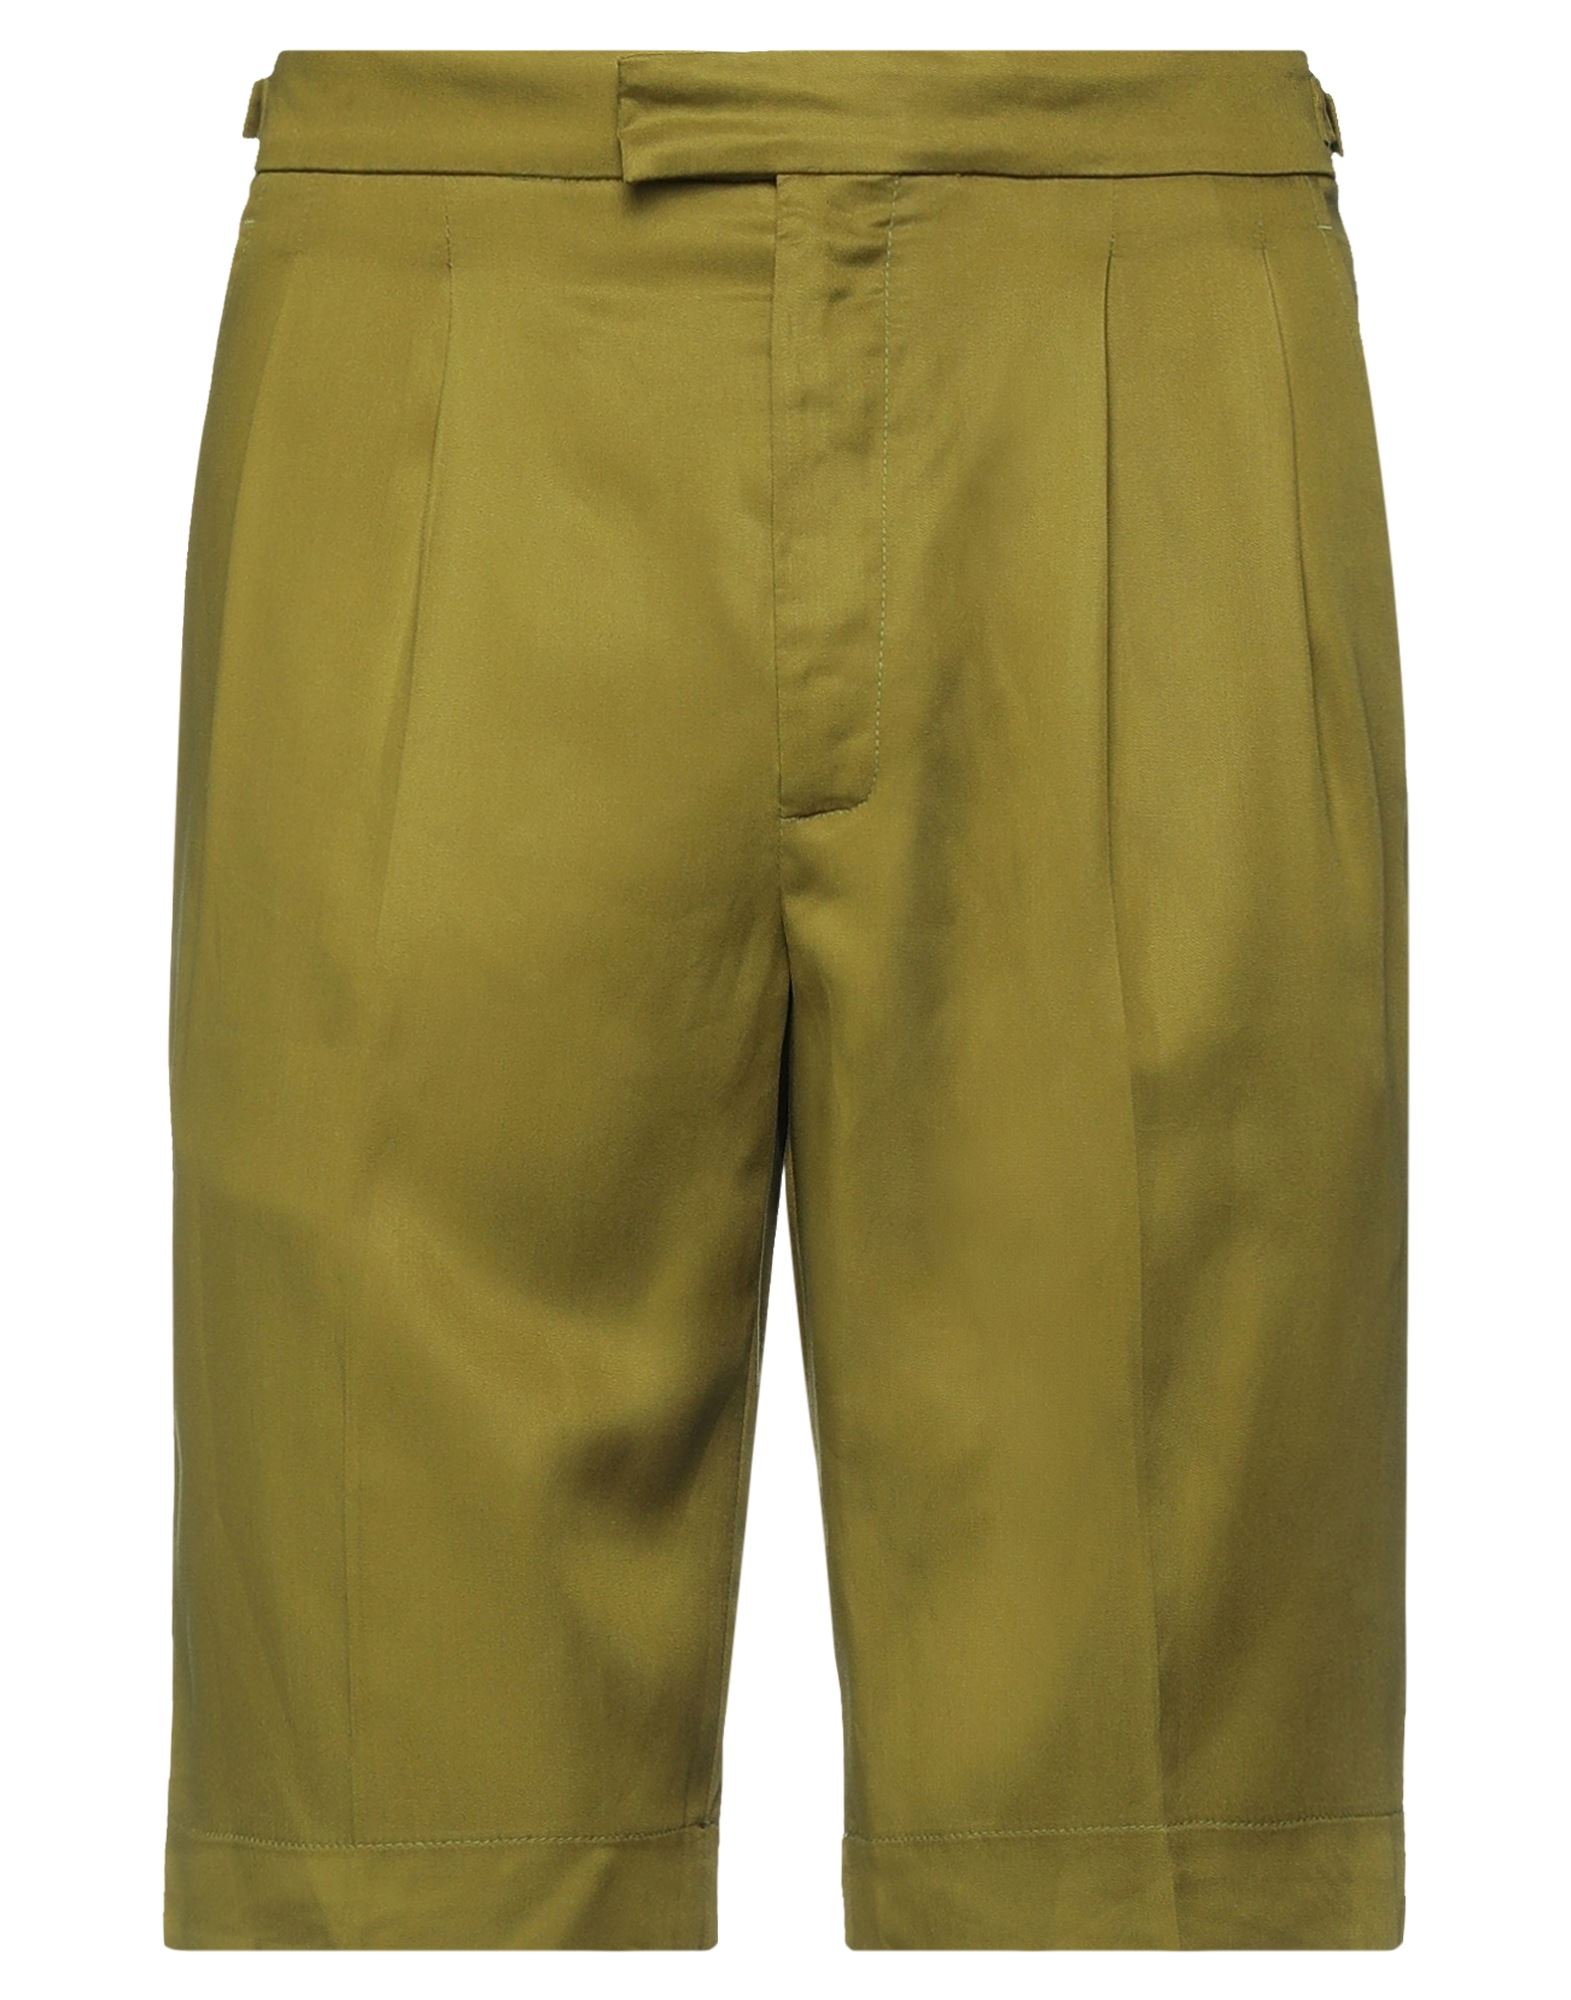 Roberto Collina Man Shorts & Bermuda Shorts Military Green Size 32 Viscose